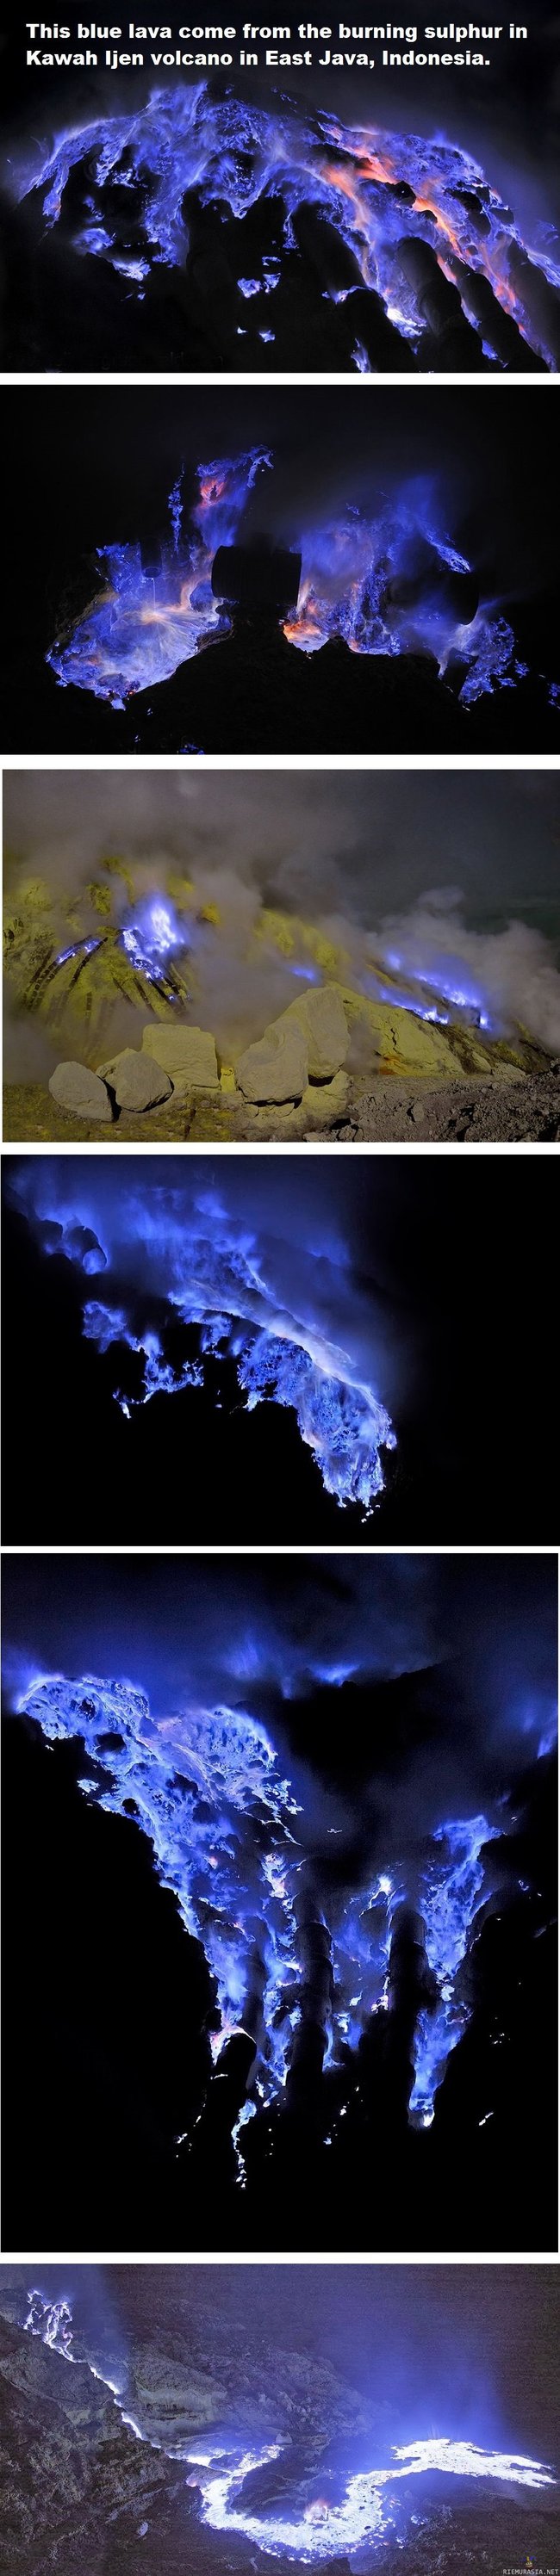 Sinistä laavaa - Kawah Ijenin tulivuori itä-Jaavassa Indonesiassa sylkee sisuksistaan sinistä laavaa joka saa värinsä palavasta rikistä.